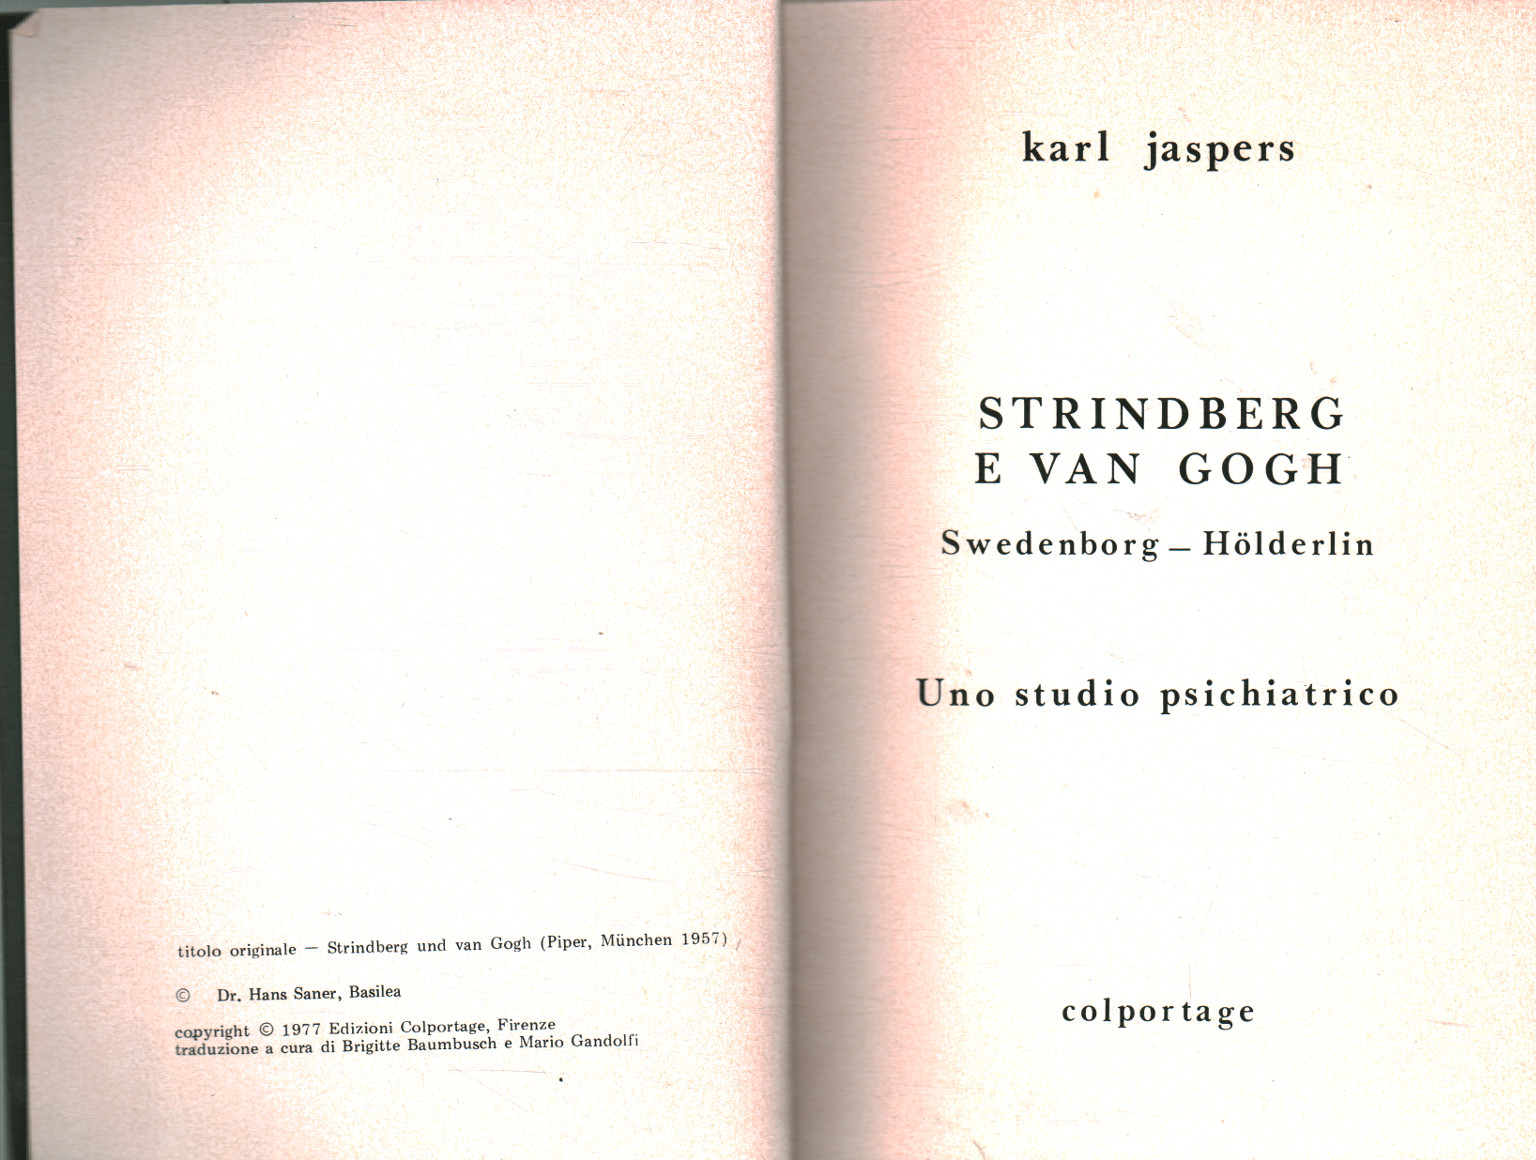 Strindberg und Van Gogh, Karl Jaspers